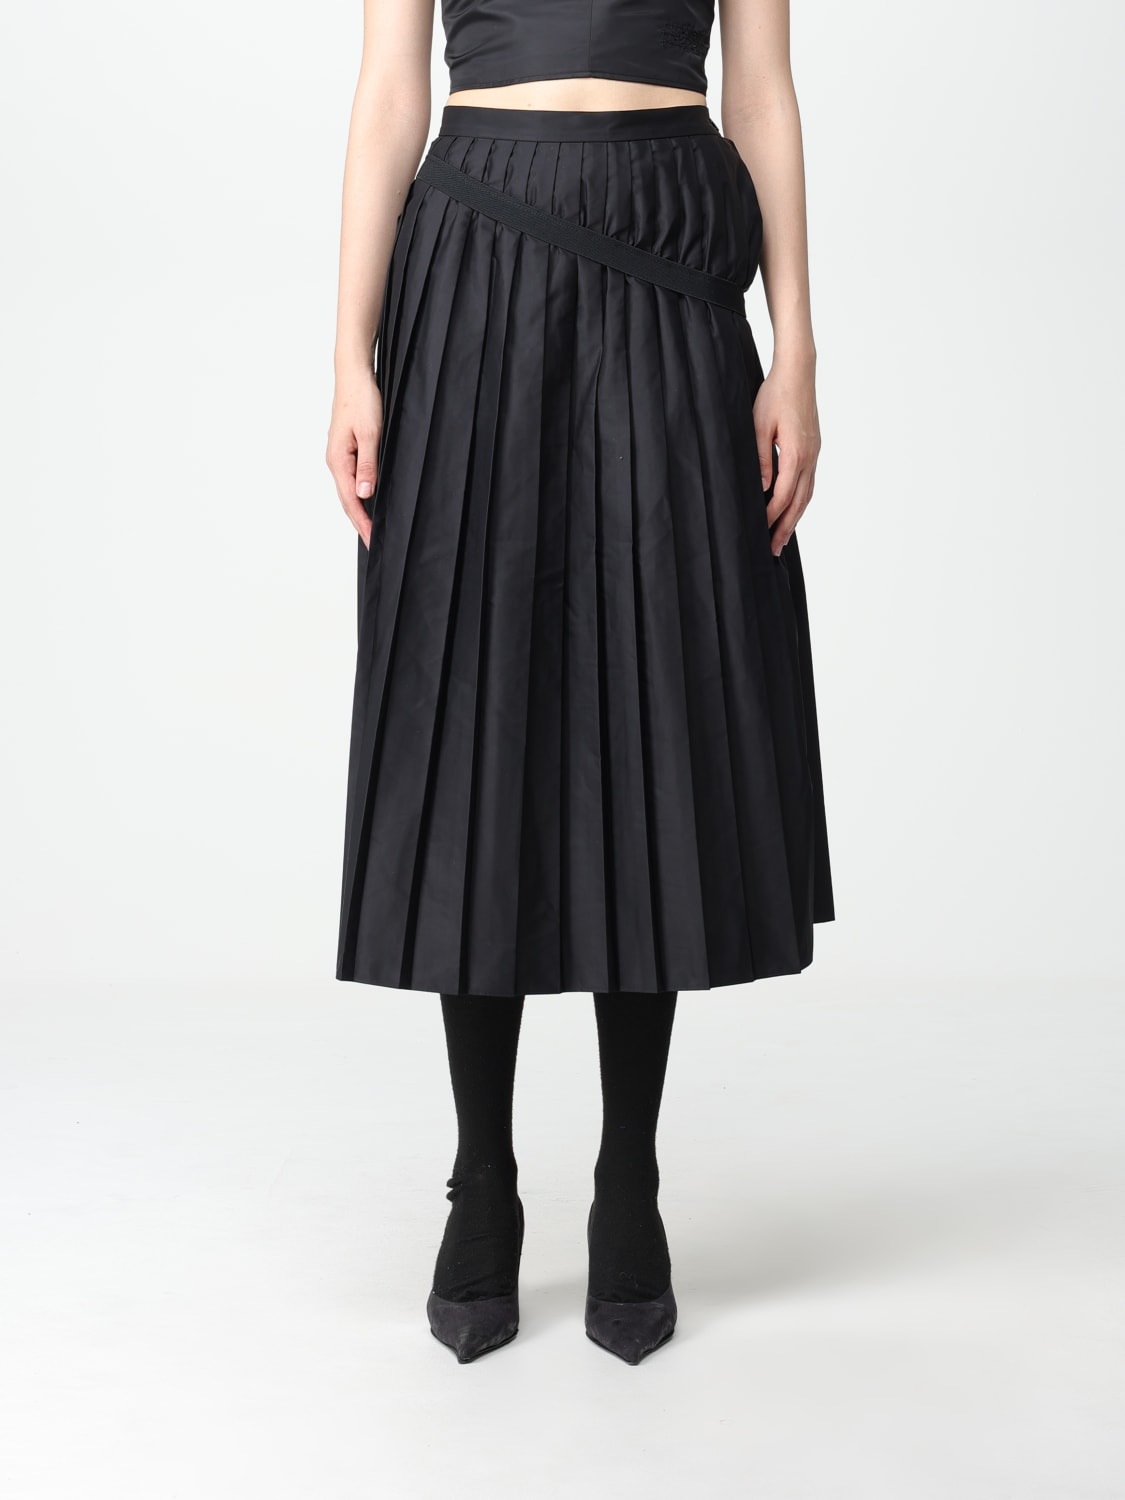 MM6 ブラックスカートスカート